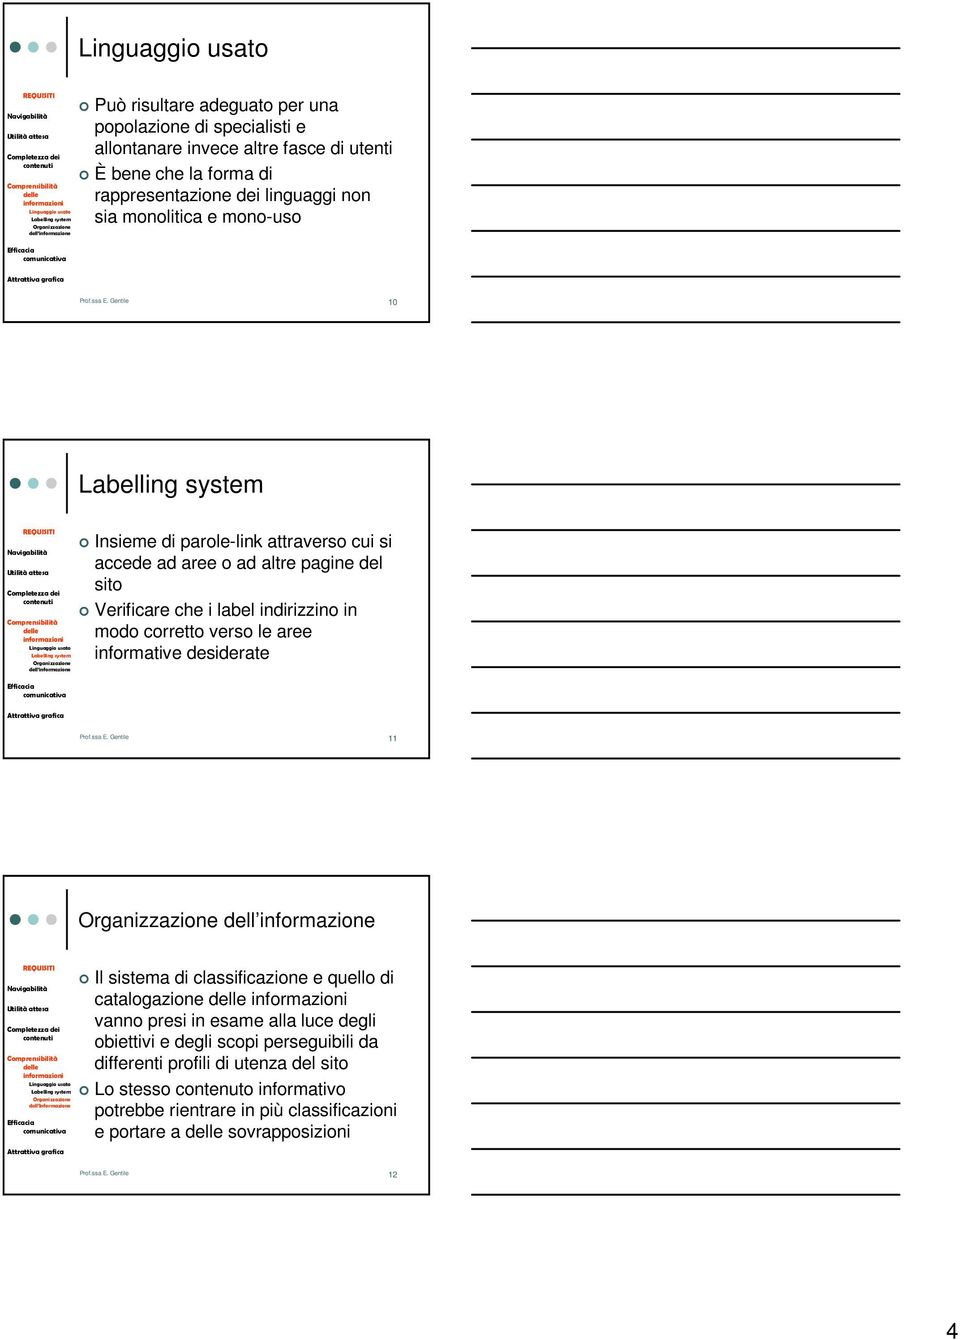 Gentile 10 Labelling system Linguaggio usato Labelling system Organizzazione dell informazione Insieme di parole-link attraverso cui si accede ad aree o ad altre pagine del sito Verificare che i